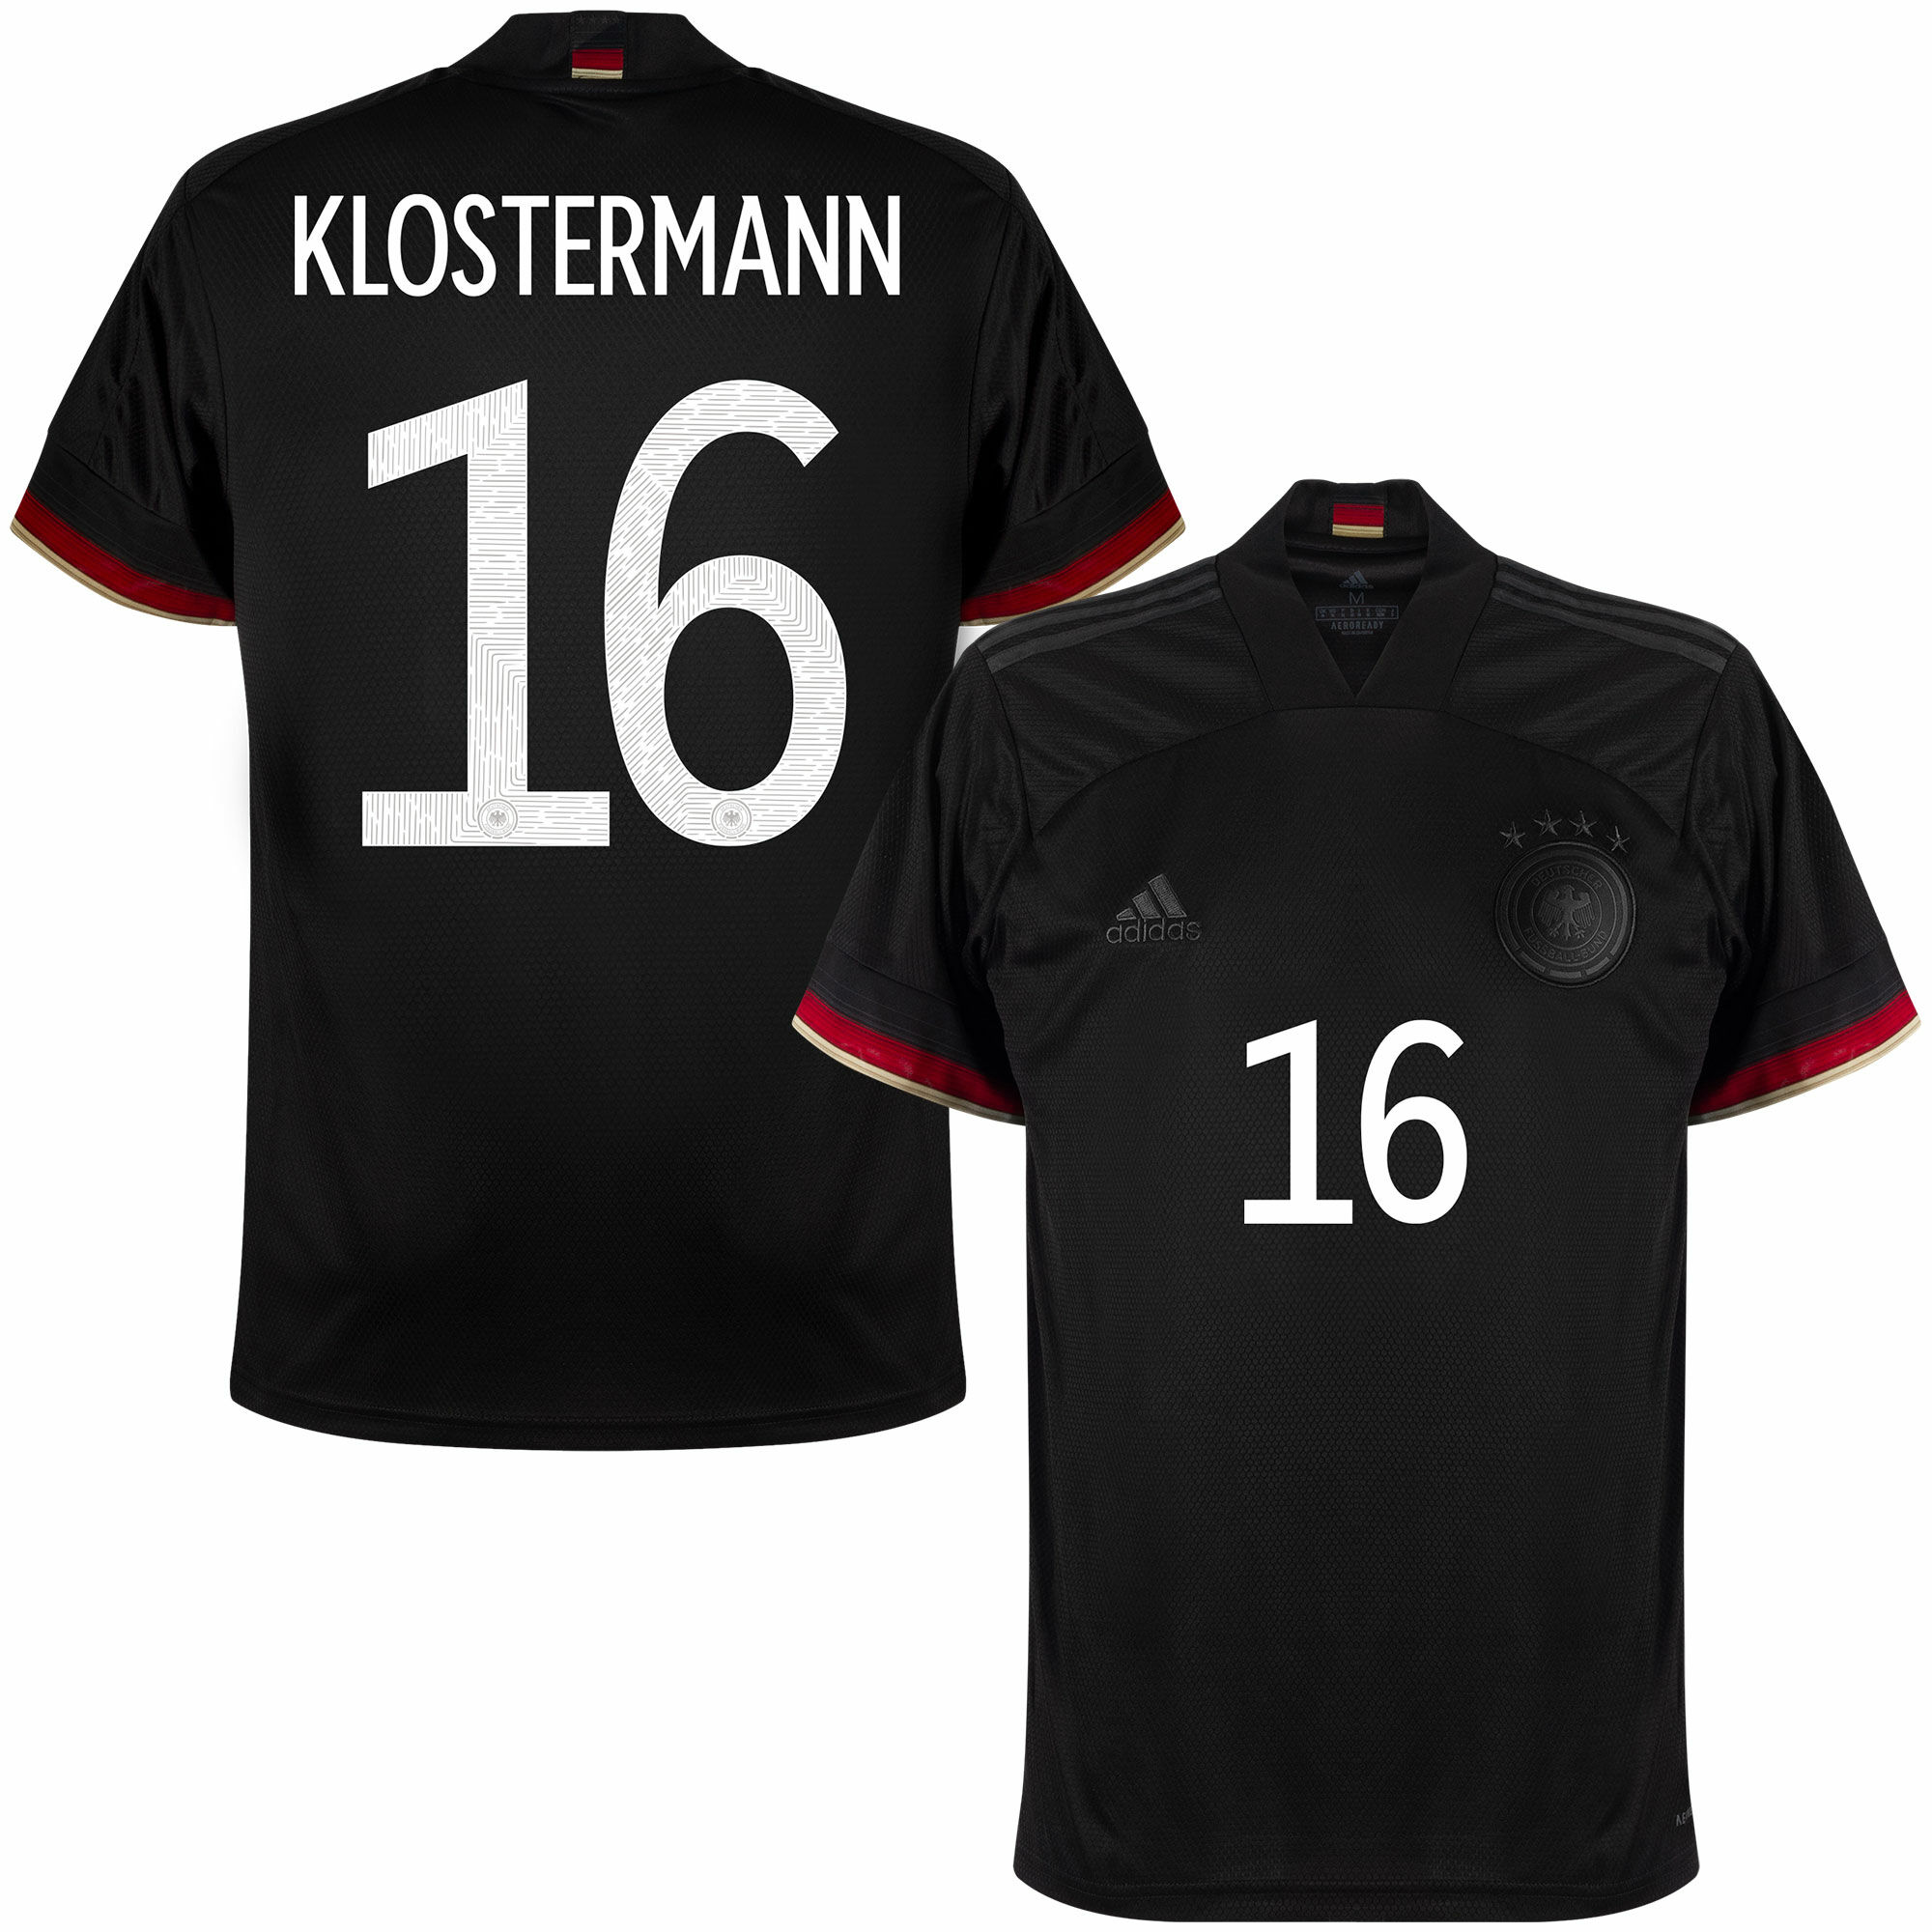 Německo - Dres fotbalový - sezóna 2021/22, Lukas Klostermann, oficiální potisk, černý, venkovní, číslo 16